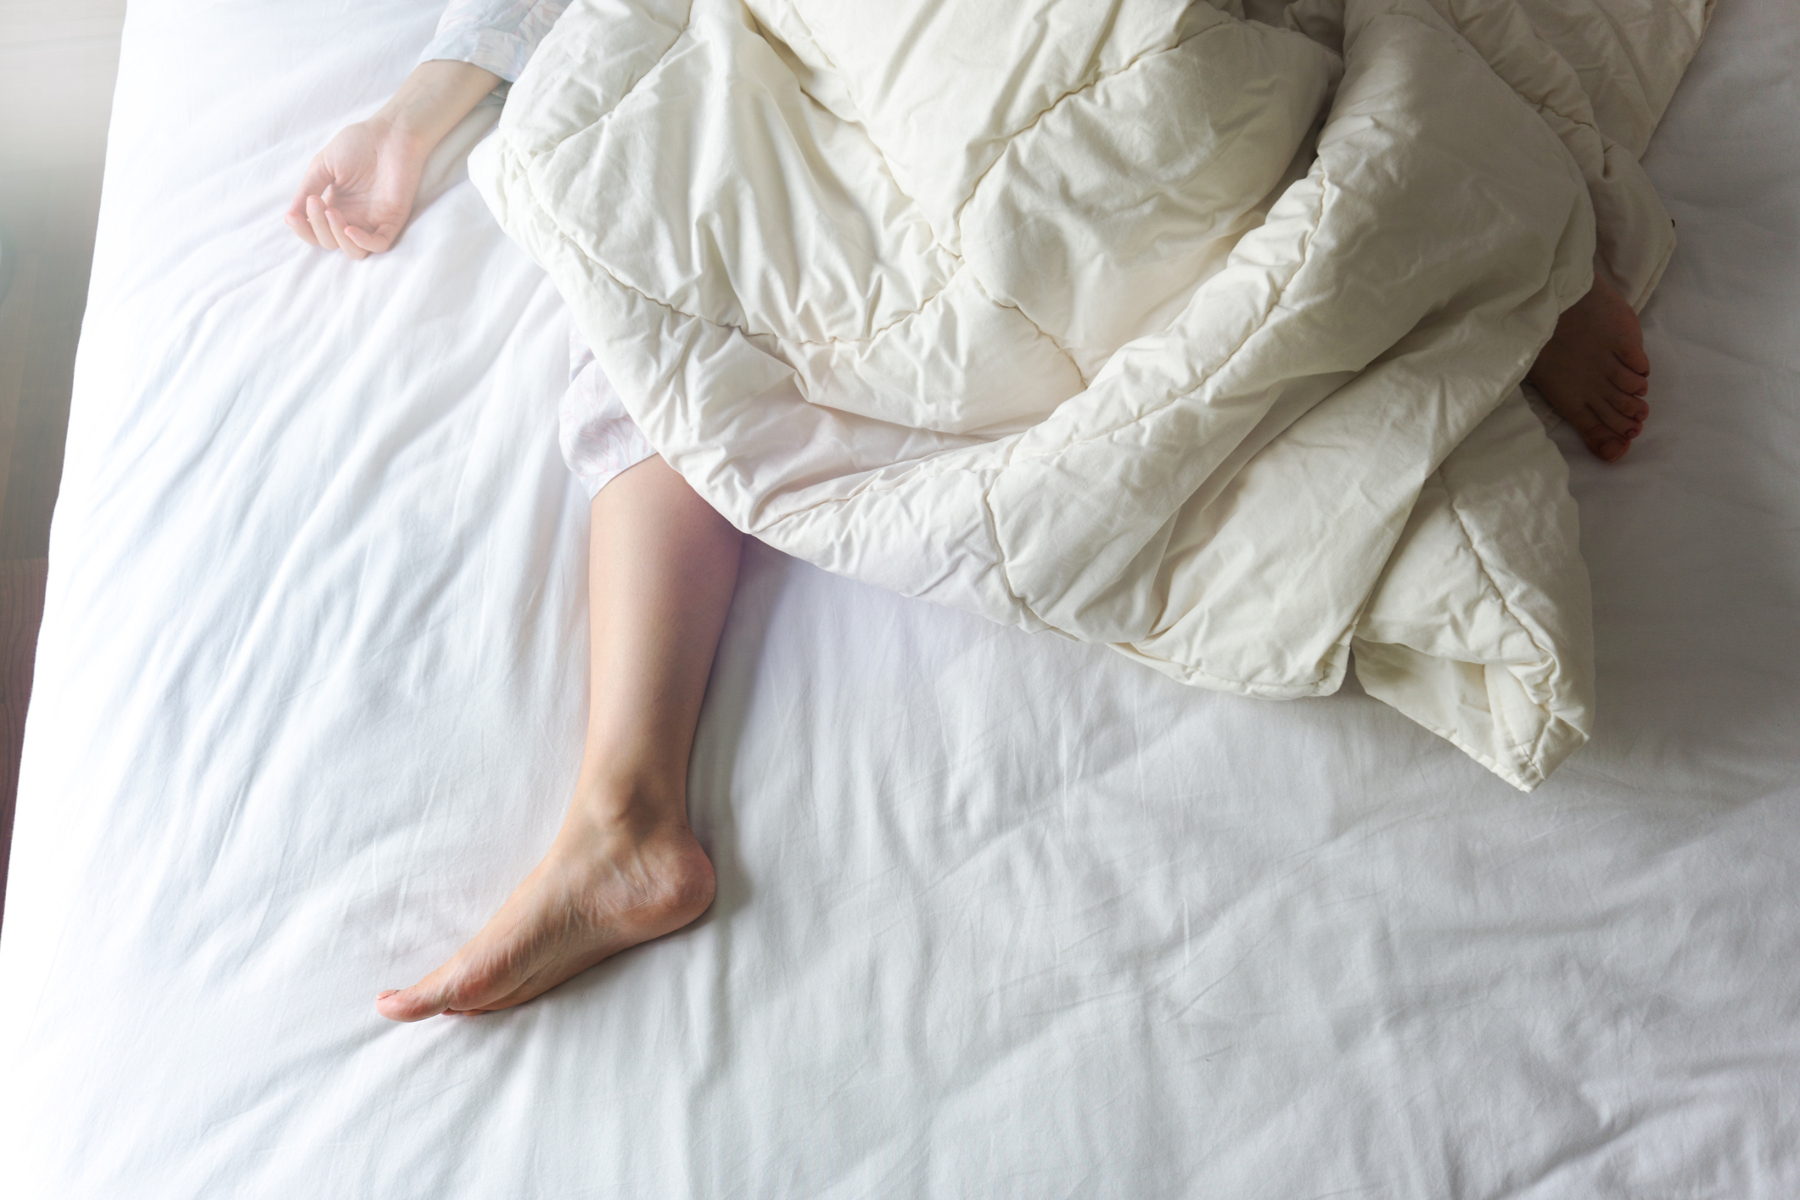 Νυχτερινή εφίδρωση: Γιατί ιδρώνουμε στον ύπνο μας;